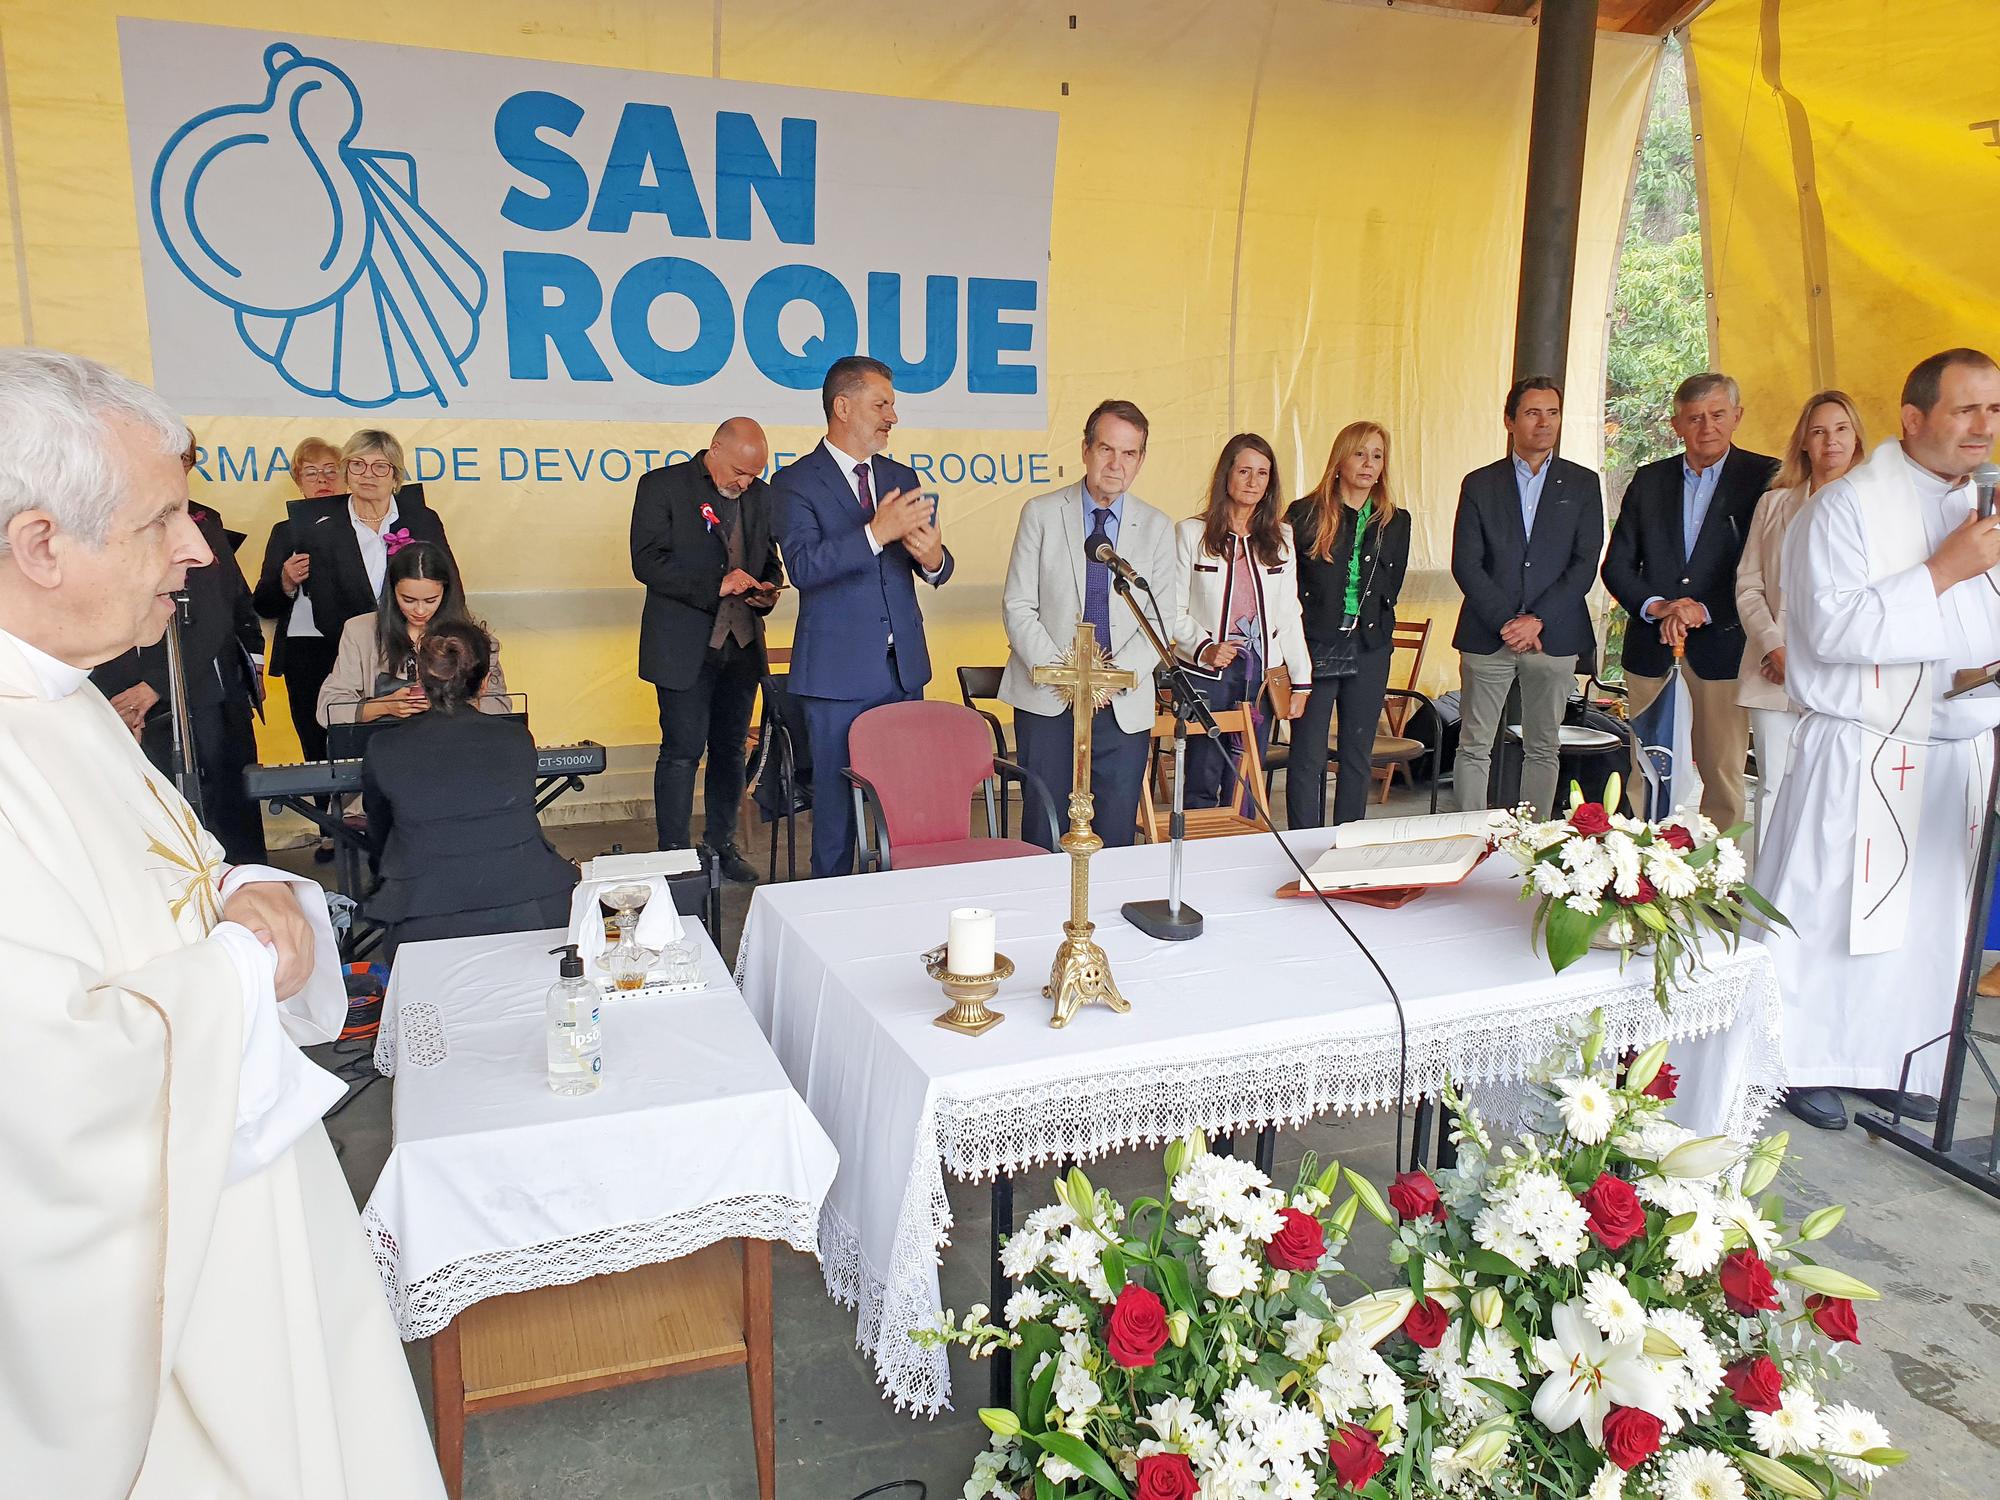 Vigo celebra un San Roque pasado por agua